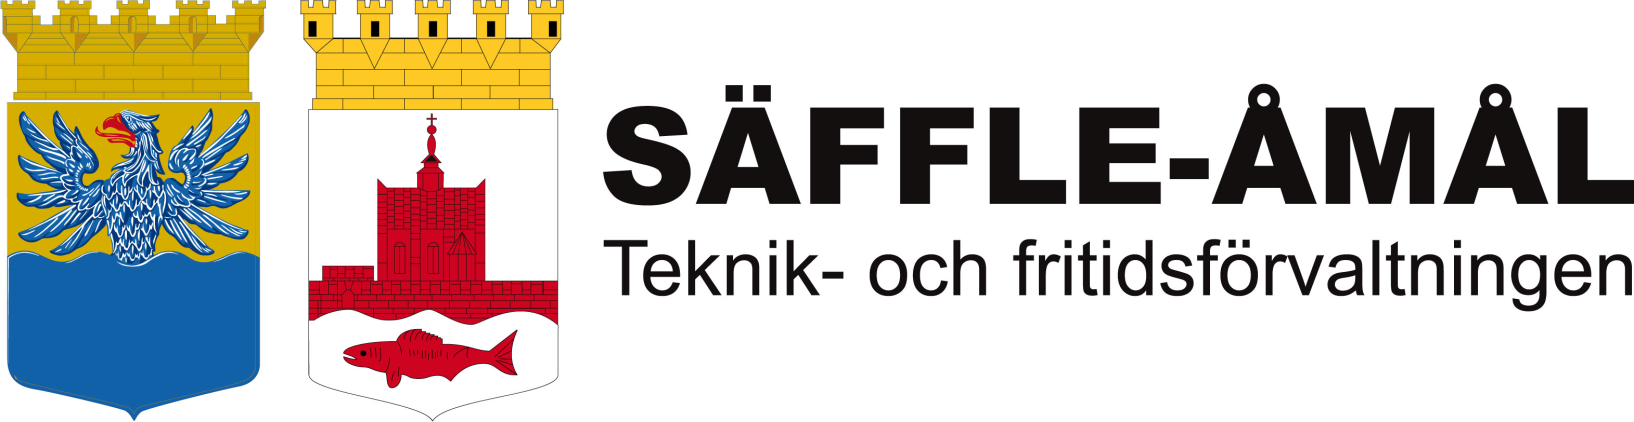 Resultat från enkätundersökning hos hushållen i Säffle och Åmåls kommuner I slutet av januari skickades enkäter ut till samtliga hushåll i Säffle och Åmåls kommuner.